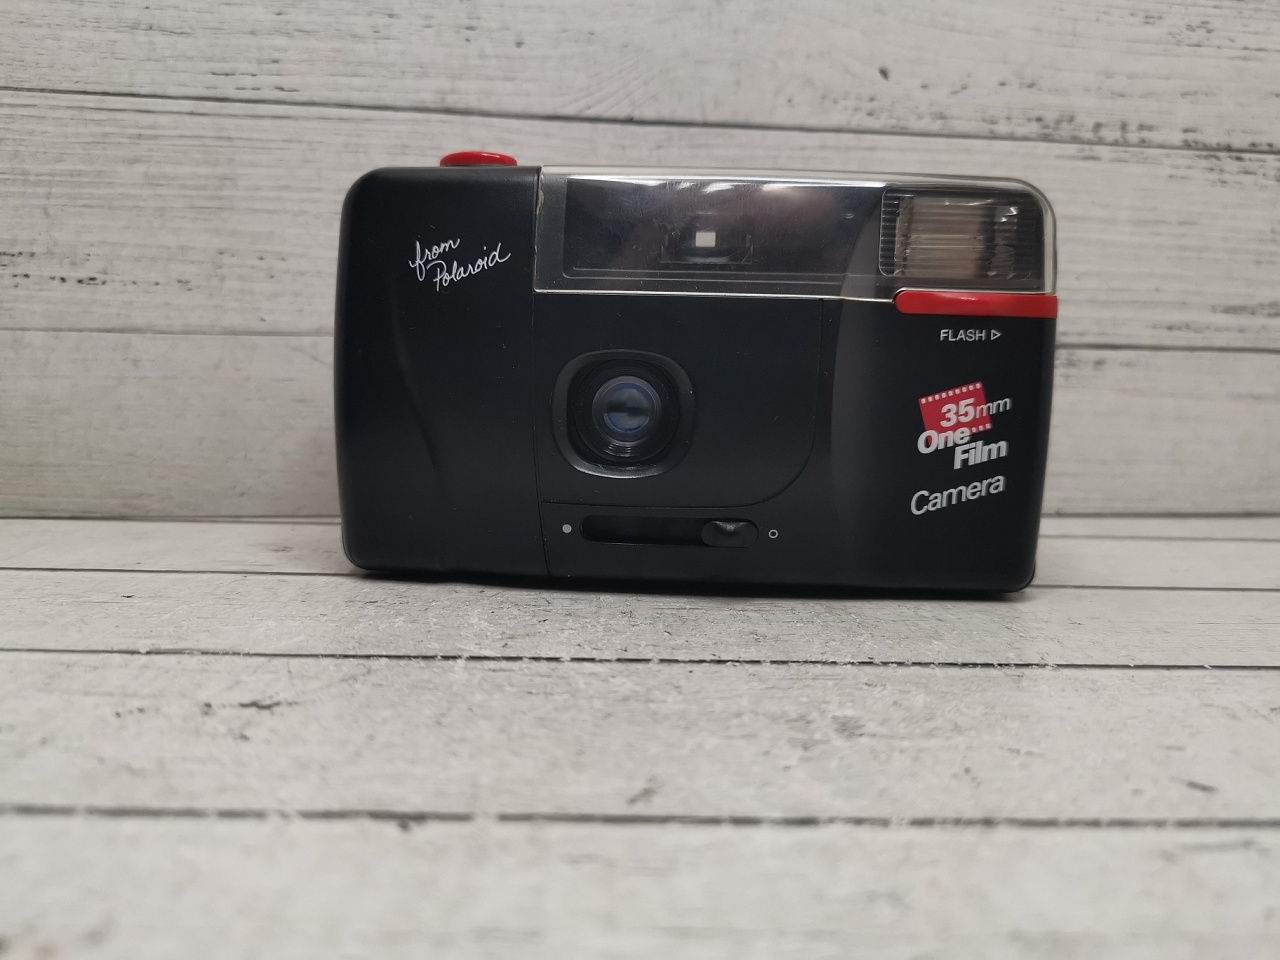 One film Camera from polaroid фото №1